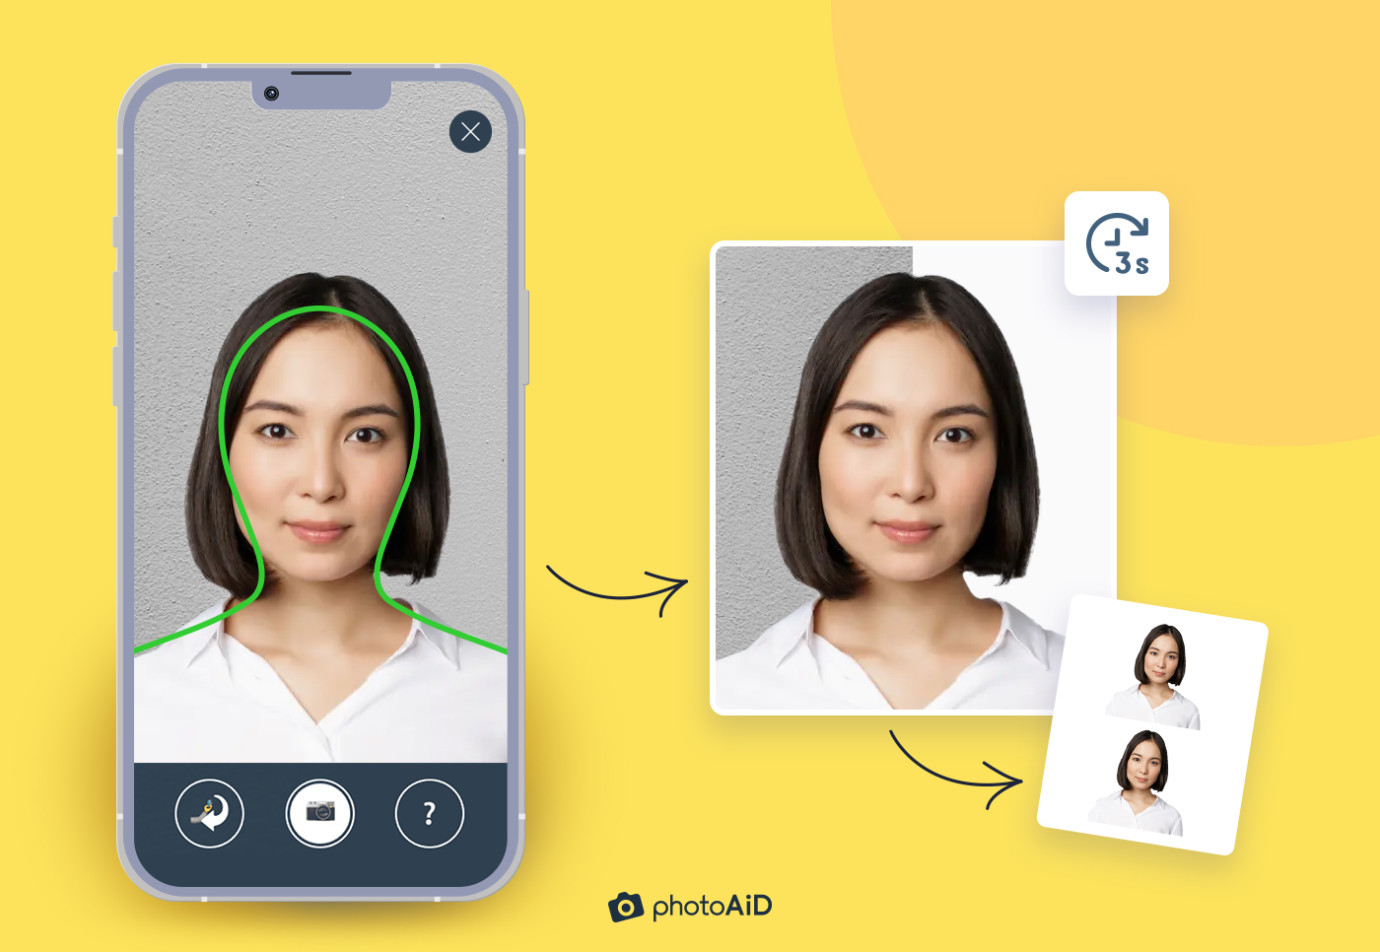 Una foto es tomada con la app móvil de PhotoAiD y convertida en una imagen válida para pasaporte en tan solo 3 segundos.